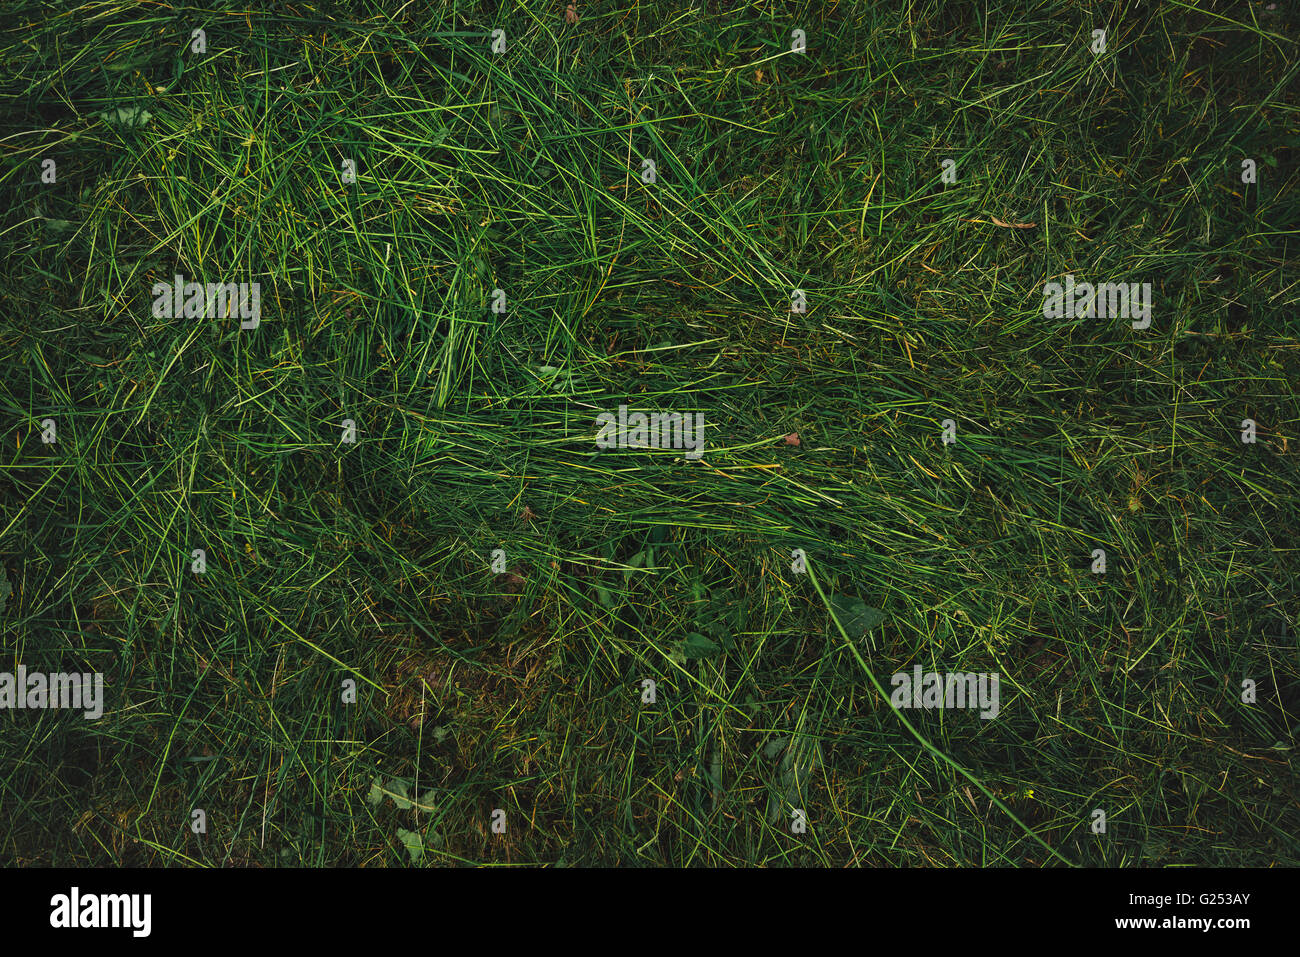 La textura del césped recién cortado, vista superior del campo de hierba segada Foto de stock